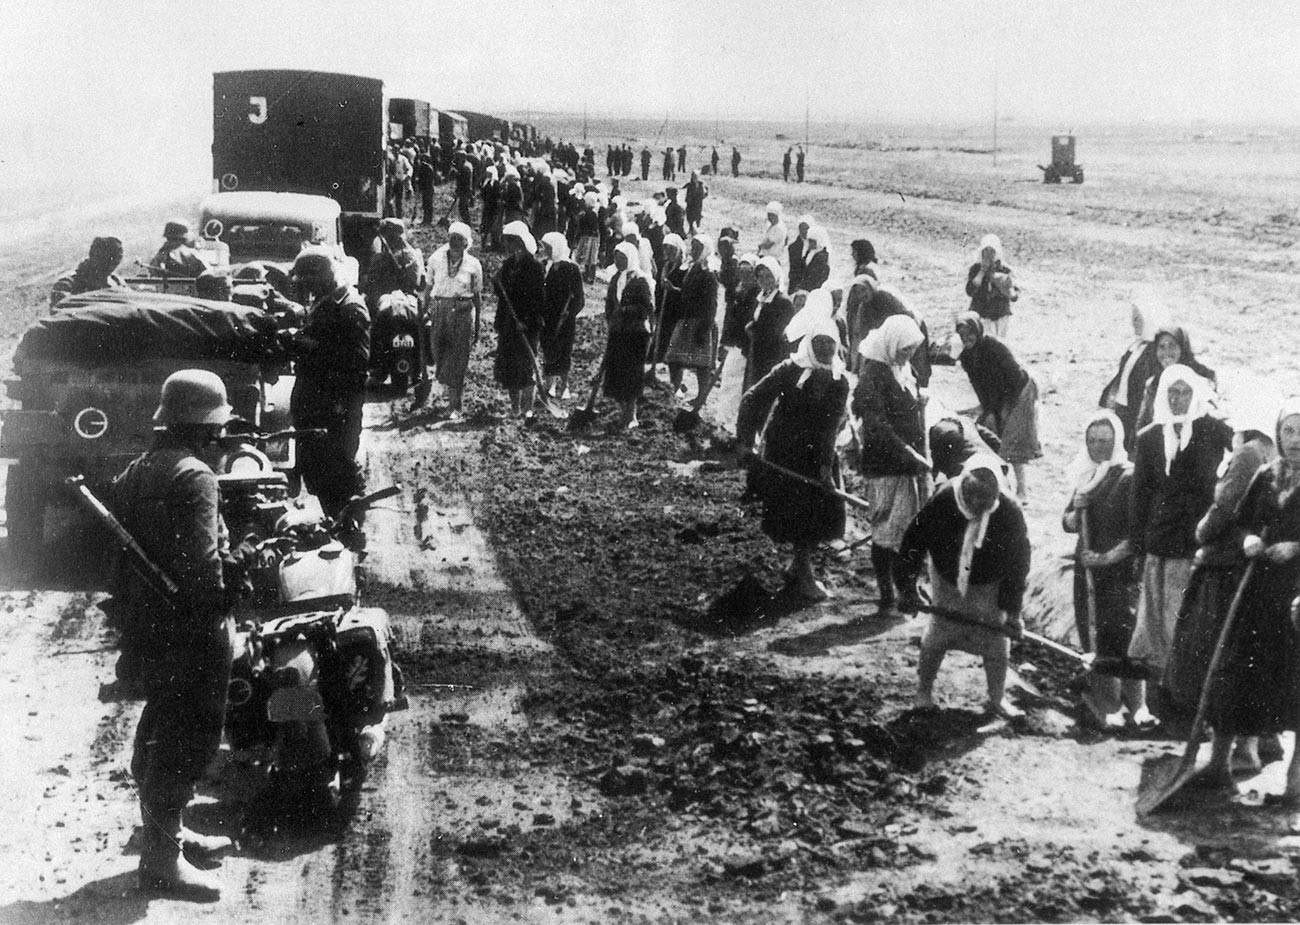 Sovjetski građani za vrijeme radova na cesti pod nadzorom njemačkih vojnika.

